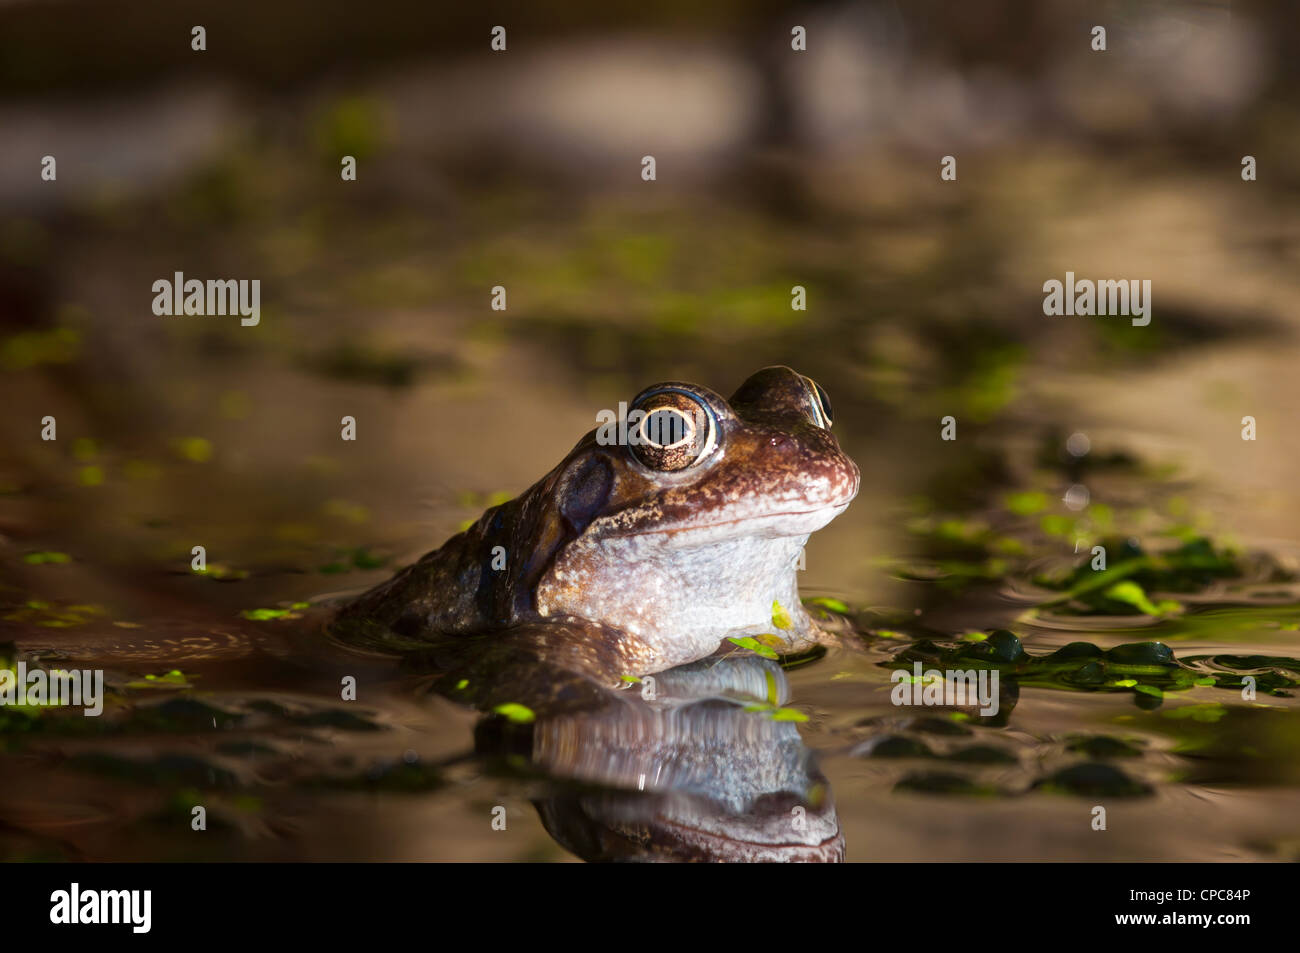 Common Frog Rana temporaria Stock Photo